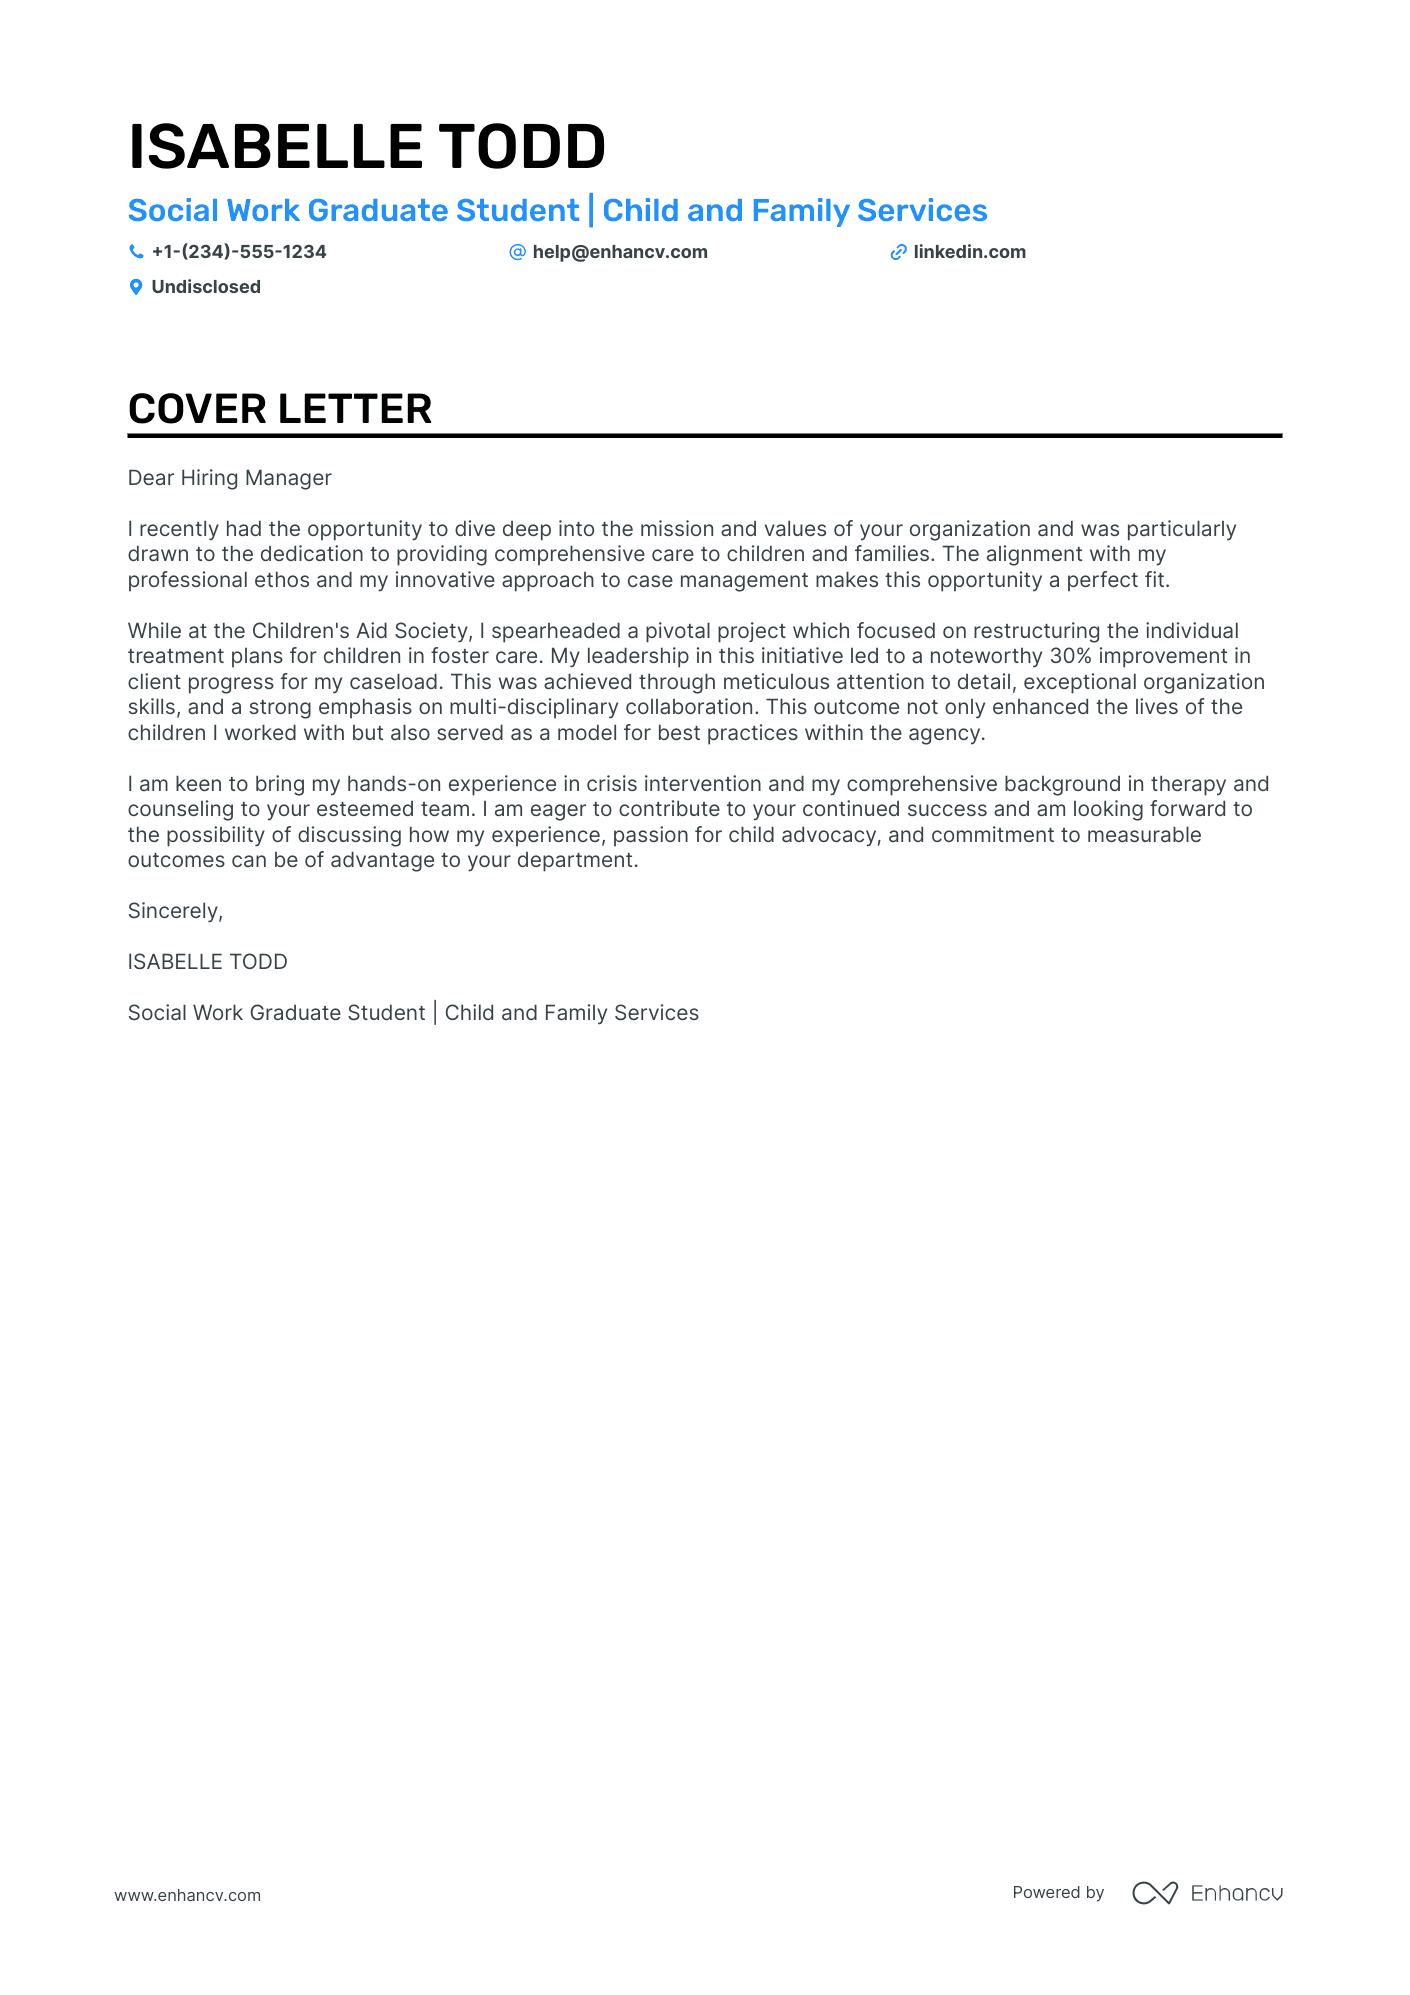 cover letter for social work position